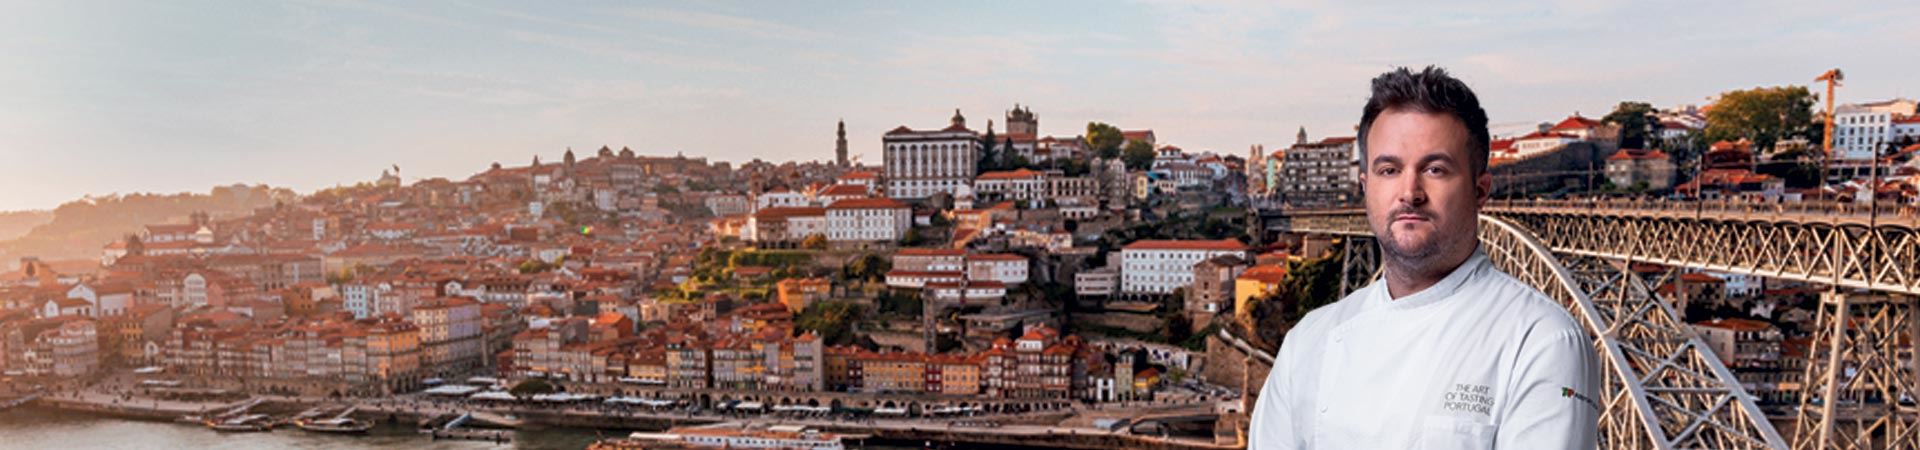 Foto de plano médio do Chef Arnaldo Azevedo. Ele veste um jaleco branco de chef com "The art of tasting Portugal" escrito no bolso esquerdo superior, no peito, e o logo da TAP Air Portugal em seu braço esquerdo. Ao fundo do chef, há uma fotografia panorâmica do Porto, com o Rio Douro e a cidade ao fundo, e a Ponte D. Maria Pia à direita.